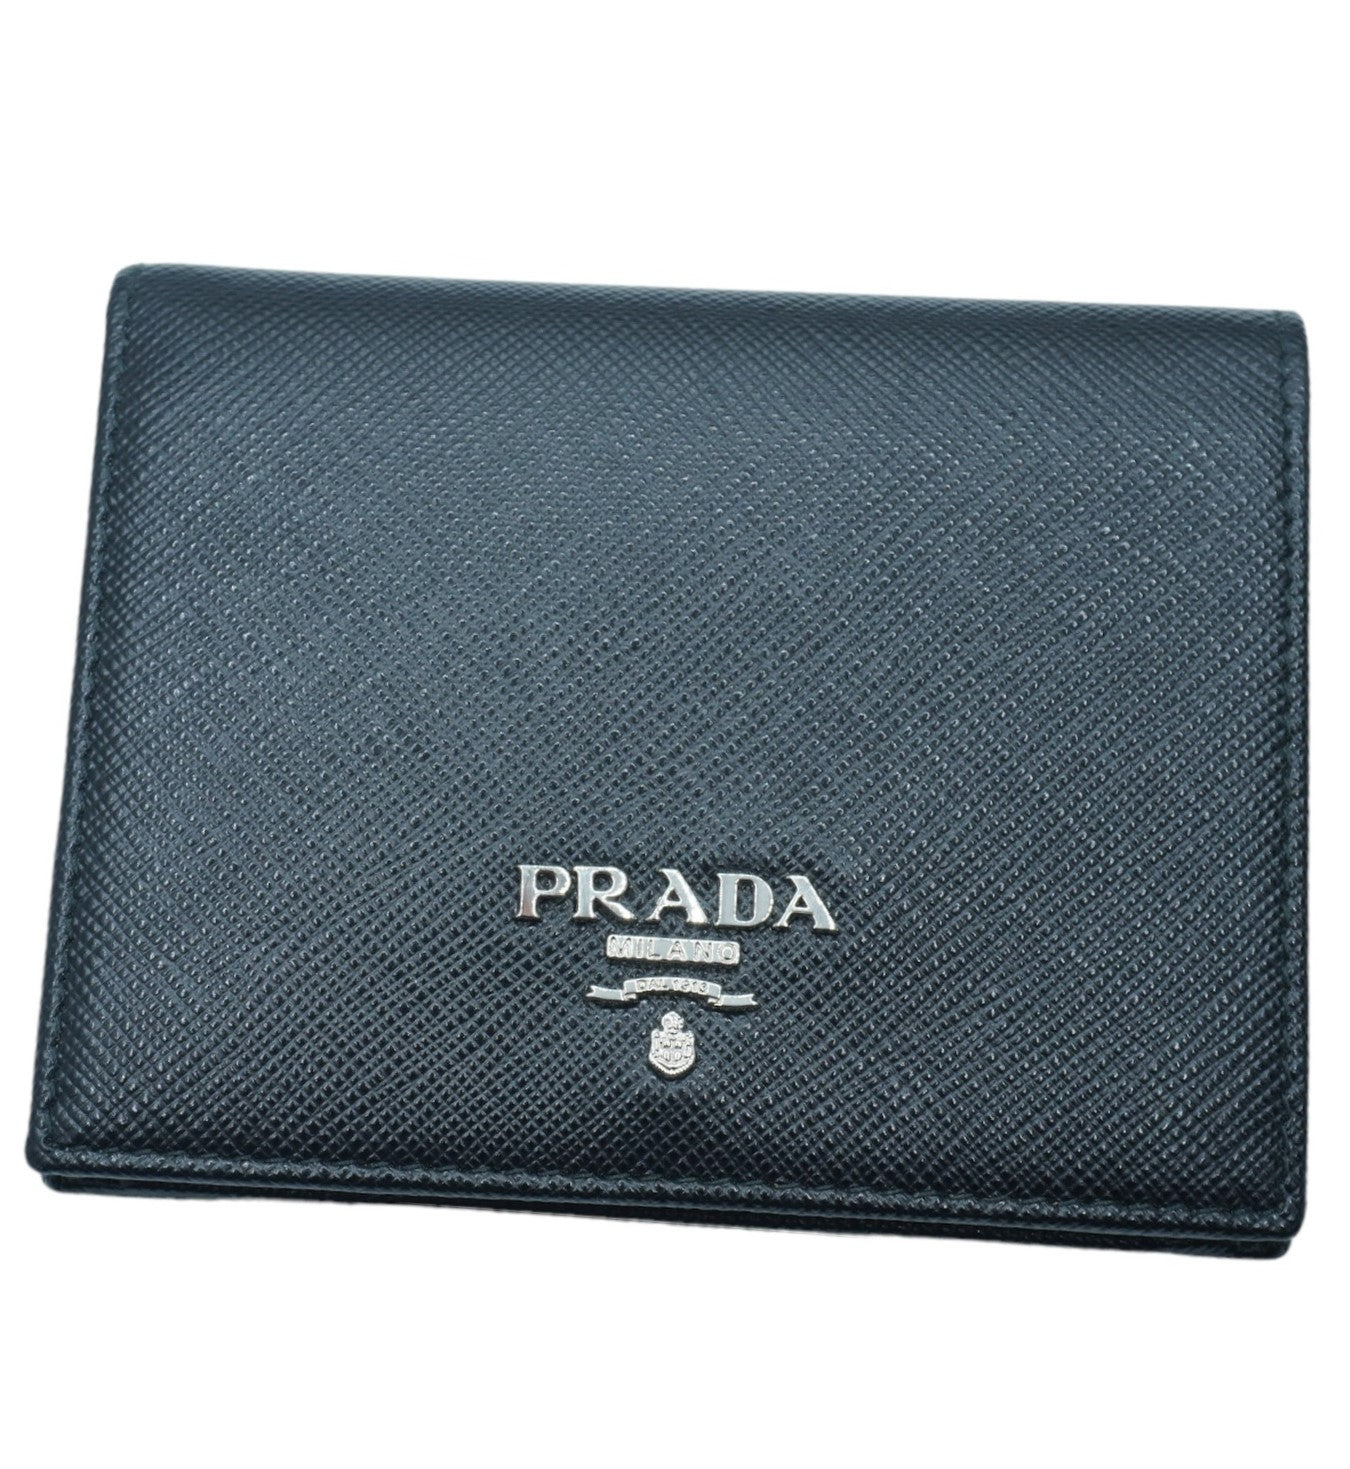 PRADA - Black Saffiano Wallet